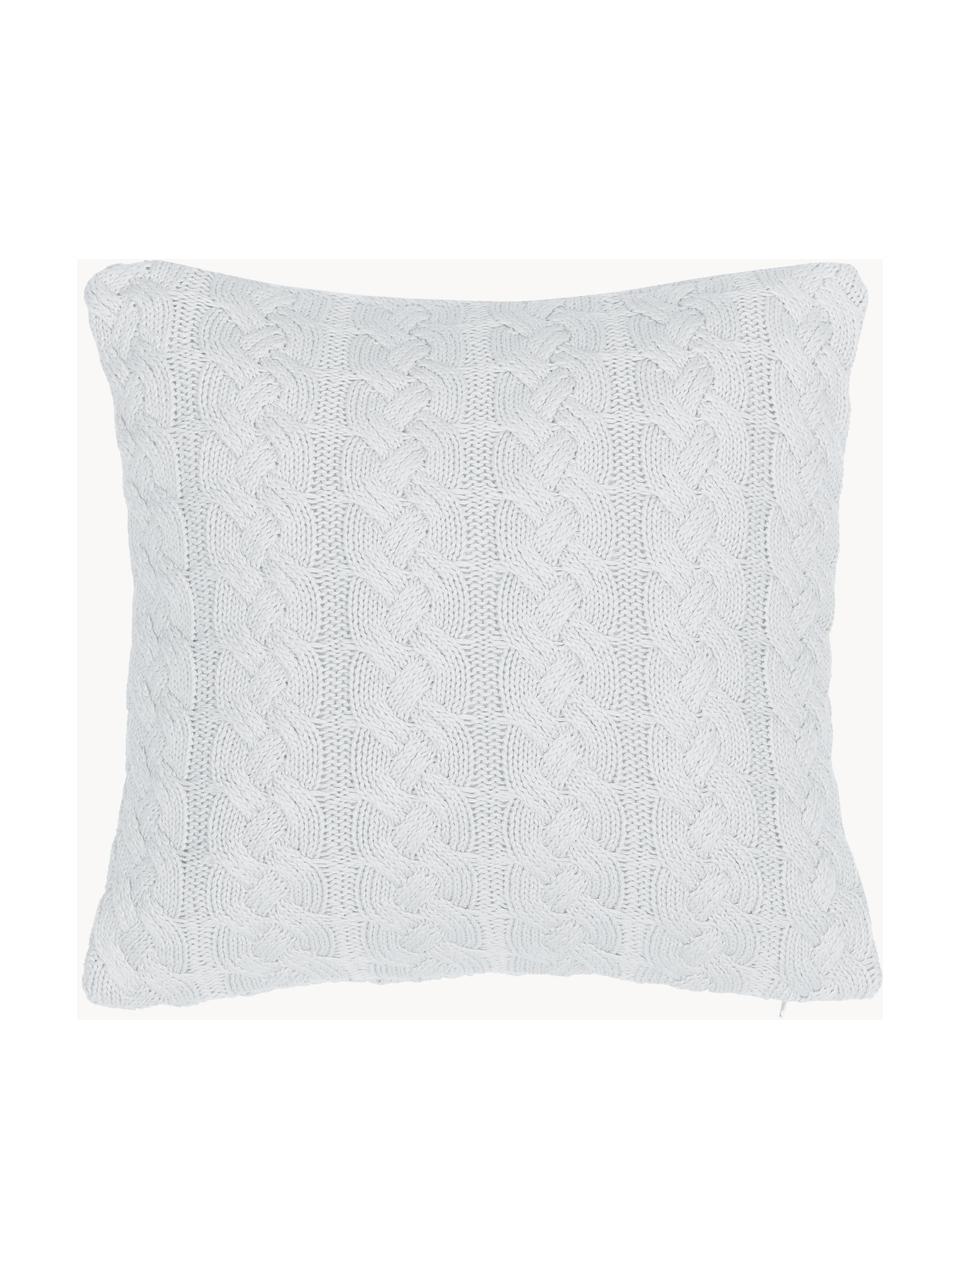 Poszewka na poduszkę z dzianiny Lucia, 100% bawełna czesana, Biały, S 40 x D 40 cm